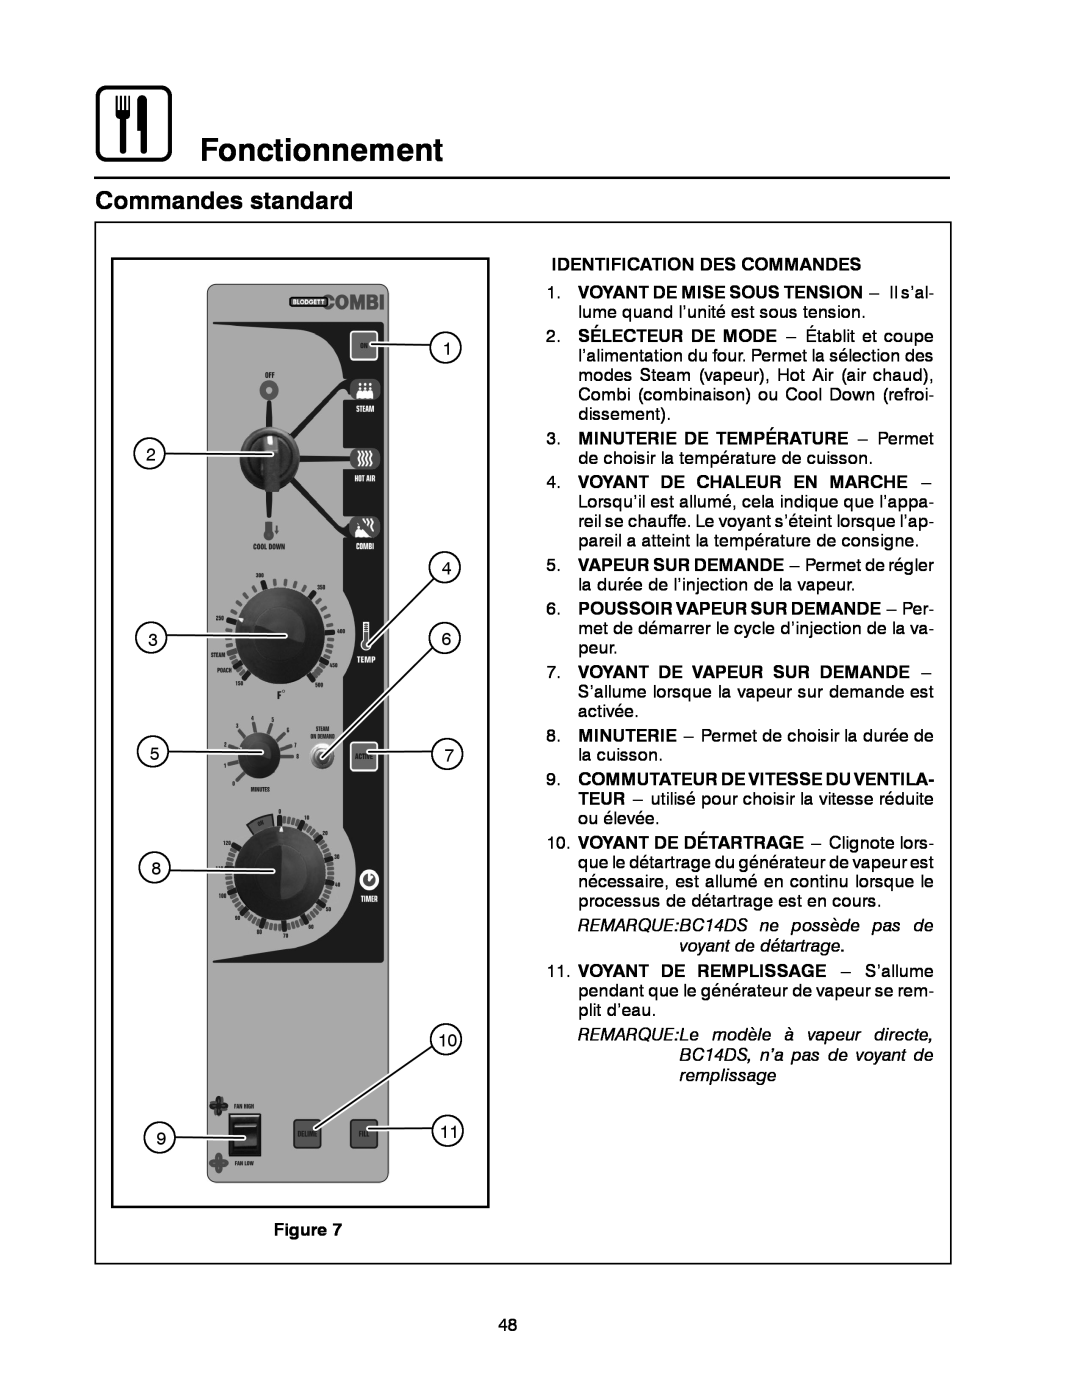 Blodgett BC-20G manual Commandes standard, Fonctionnement, Identification Des Commandes, Voyant De Chaleur En Marche 